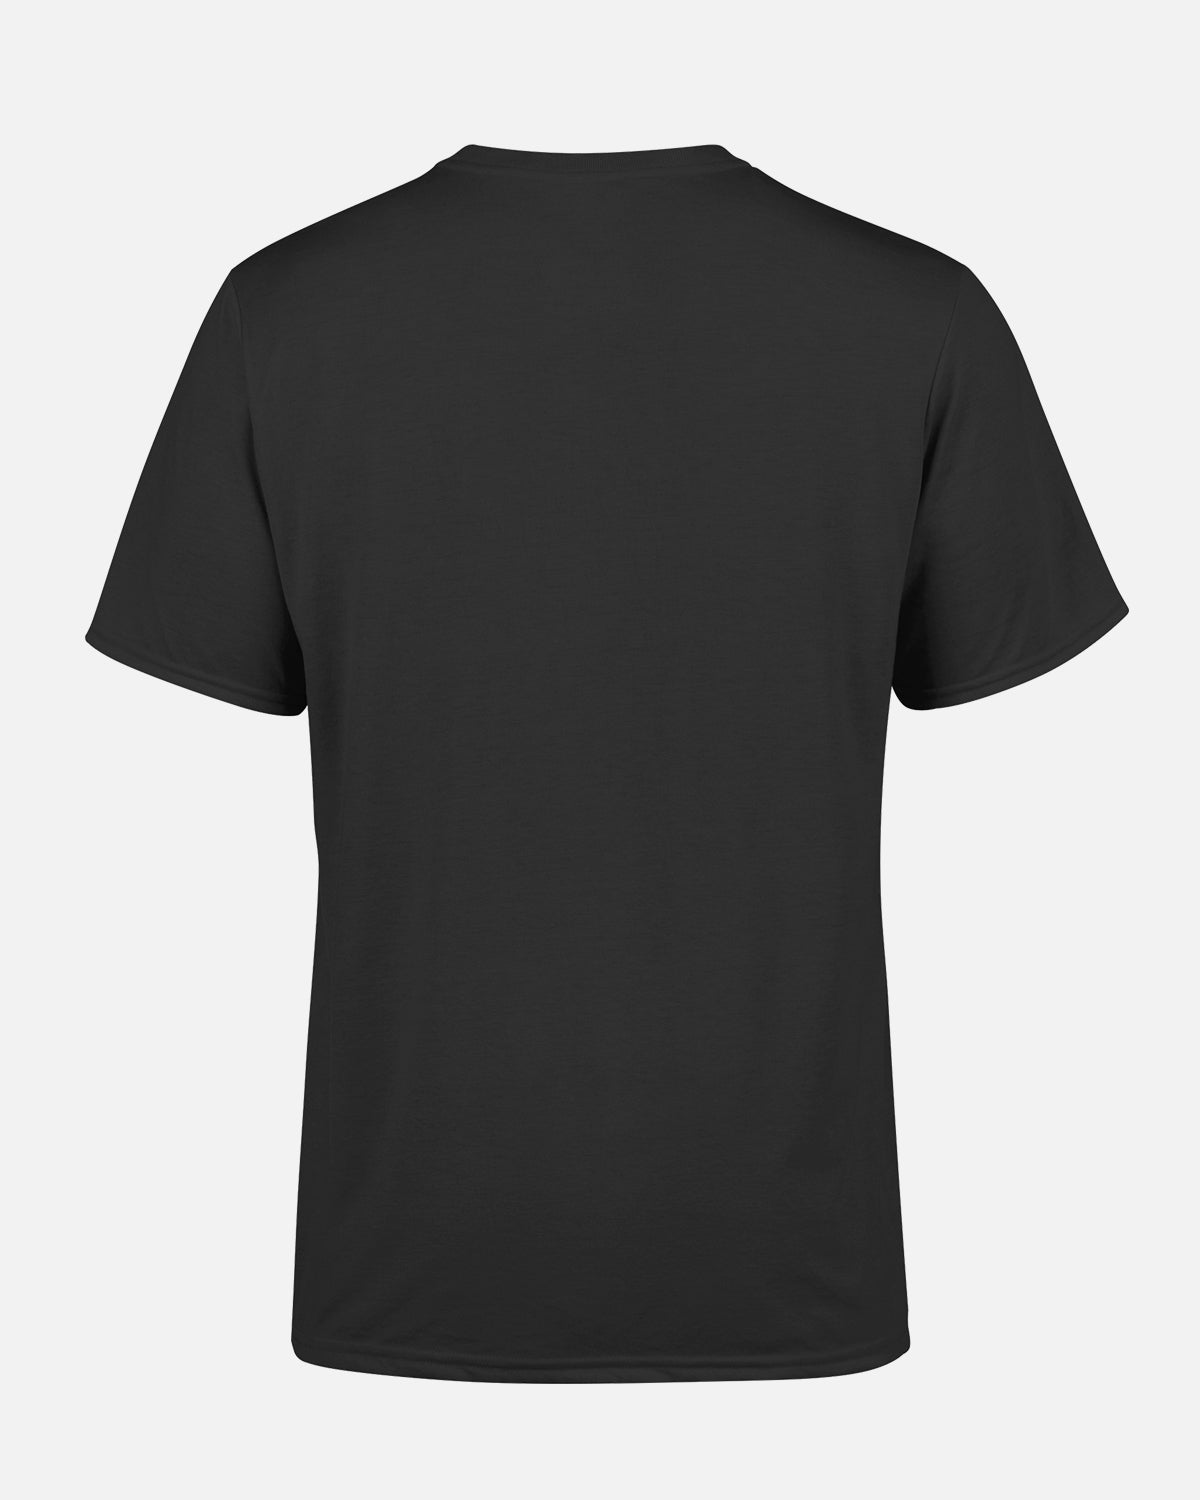 NFFC Black Pitch T-Shirt